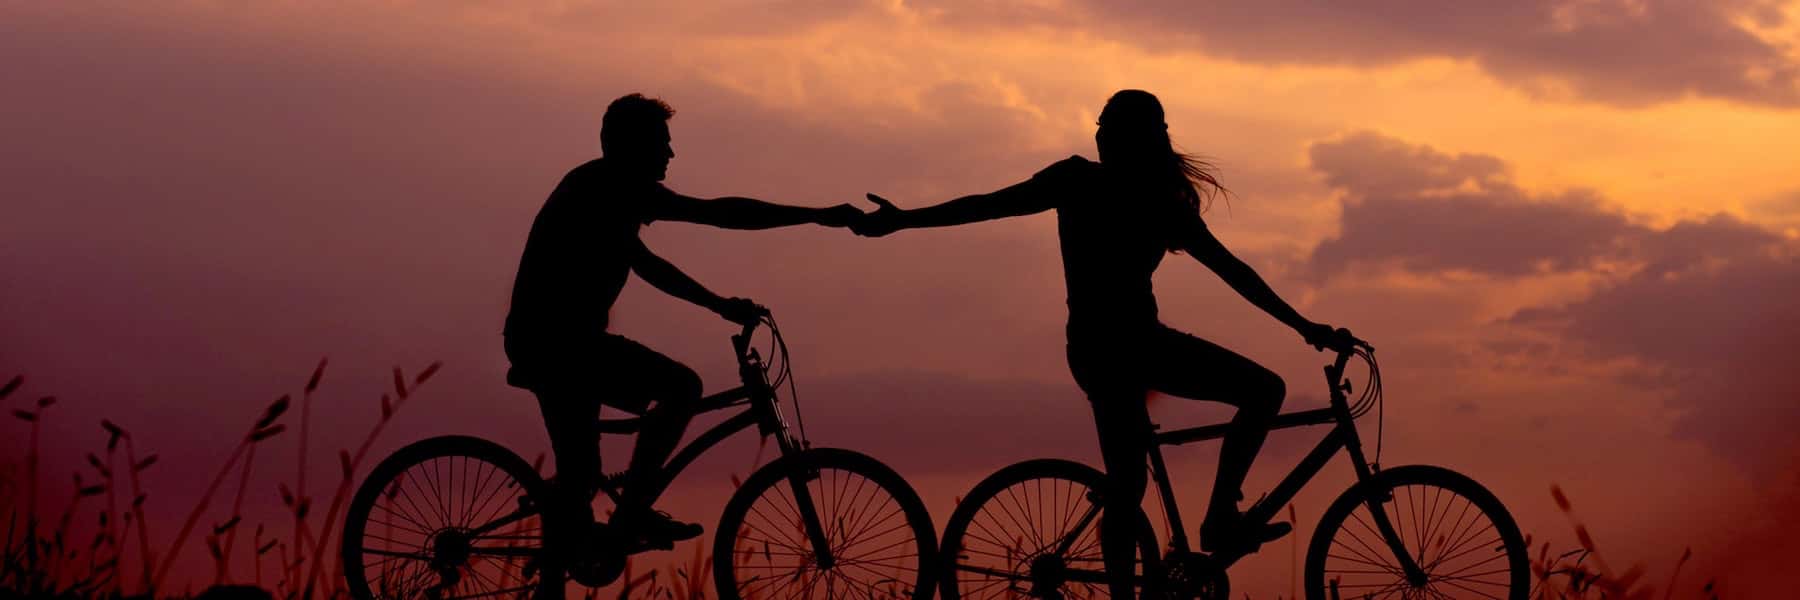 Ett par som cyklar mot en bakgrund av solnedgång